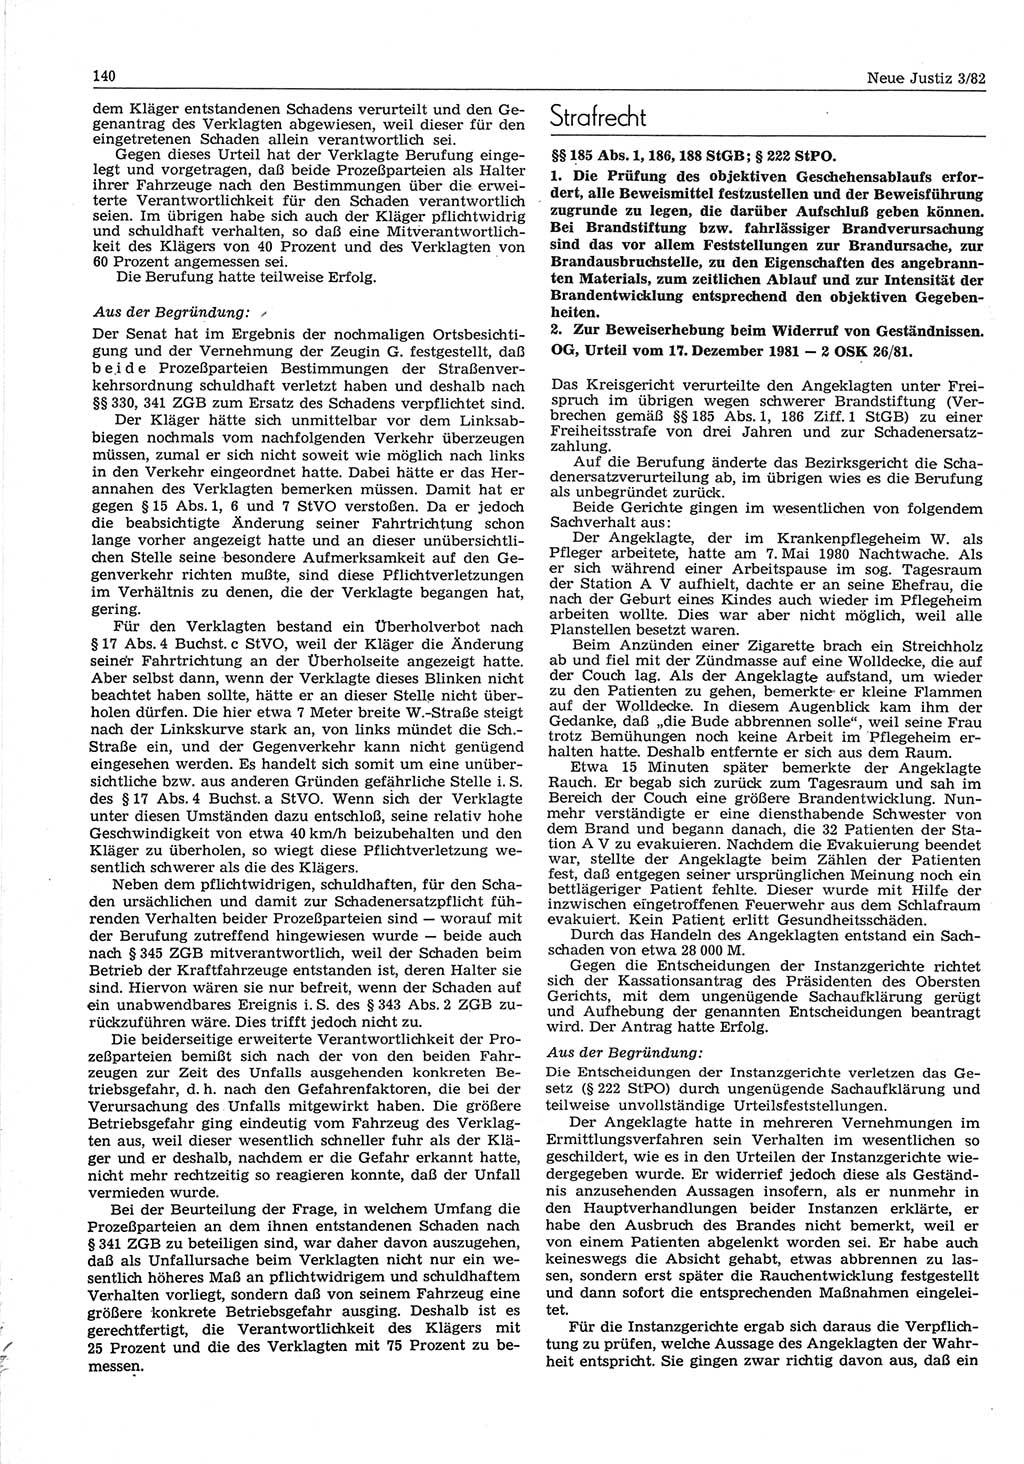 Neue Justiz (NJ), Zeitschrift für sozialistisches Recht und Gesetzlichkeit [Deutsche Demokratische Republik (DDR)], 36. Jahrgang 1982, Seite 140 (NJ DDR 1982, S. 140)